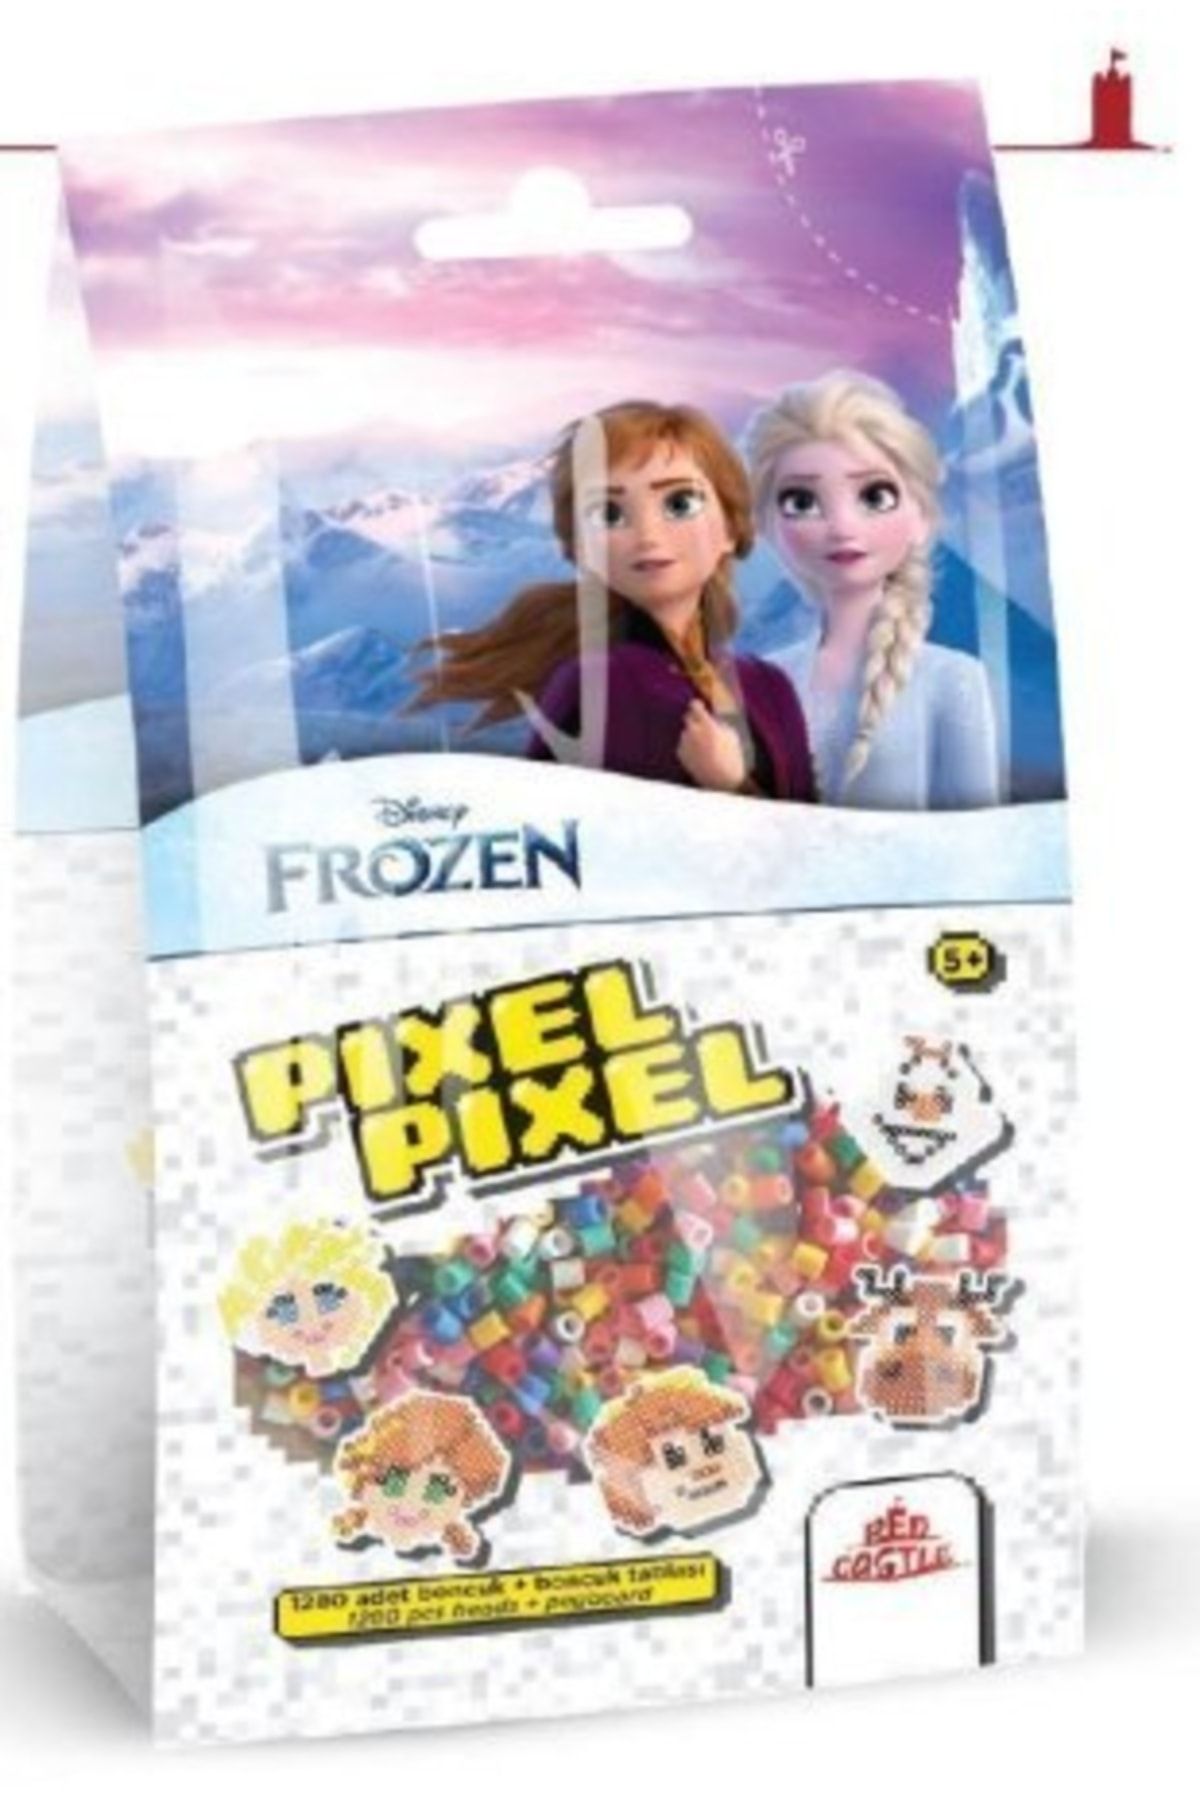 DİSNEY Pıxel Pıxel Frozen Boncuk Aktivite Seti (1.280 Adet Renkli Boncuk)